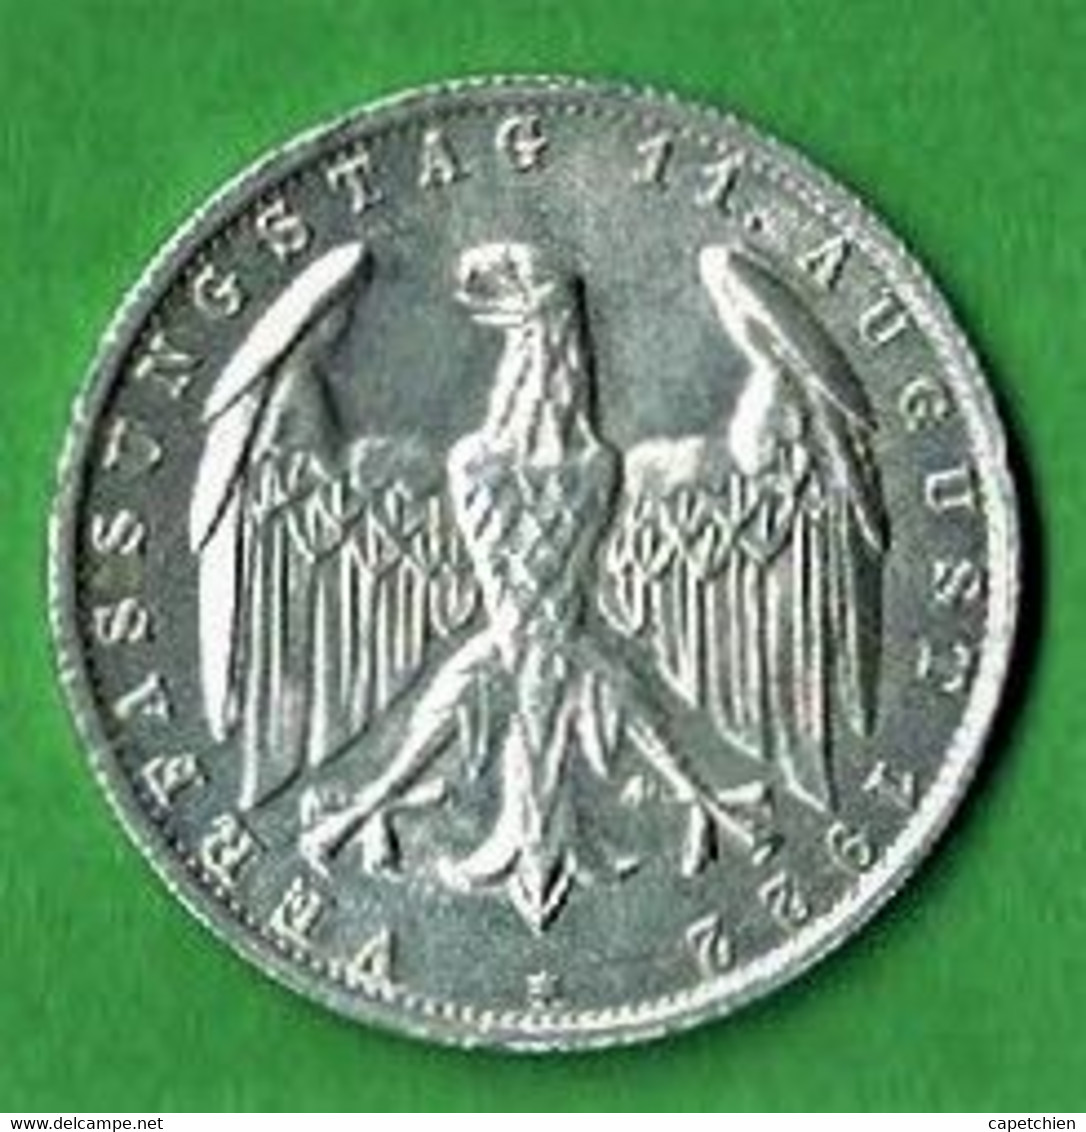 ALLEMAGNE / REPUBLIQUE DE WEIMAR / ANNIVERSAIRE DE LA CONSTITUTION / 3 MARK / 1922 J / ALU / ETAT SUP - 3 Mark & 3 Reichsmark